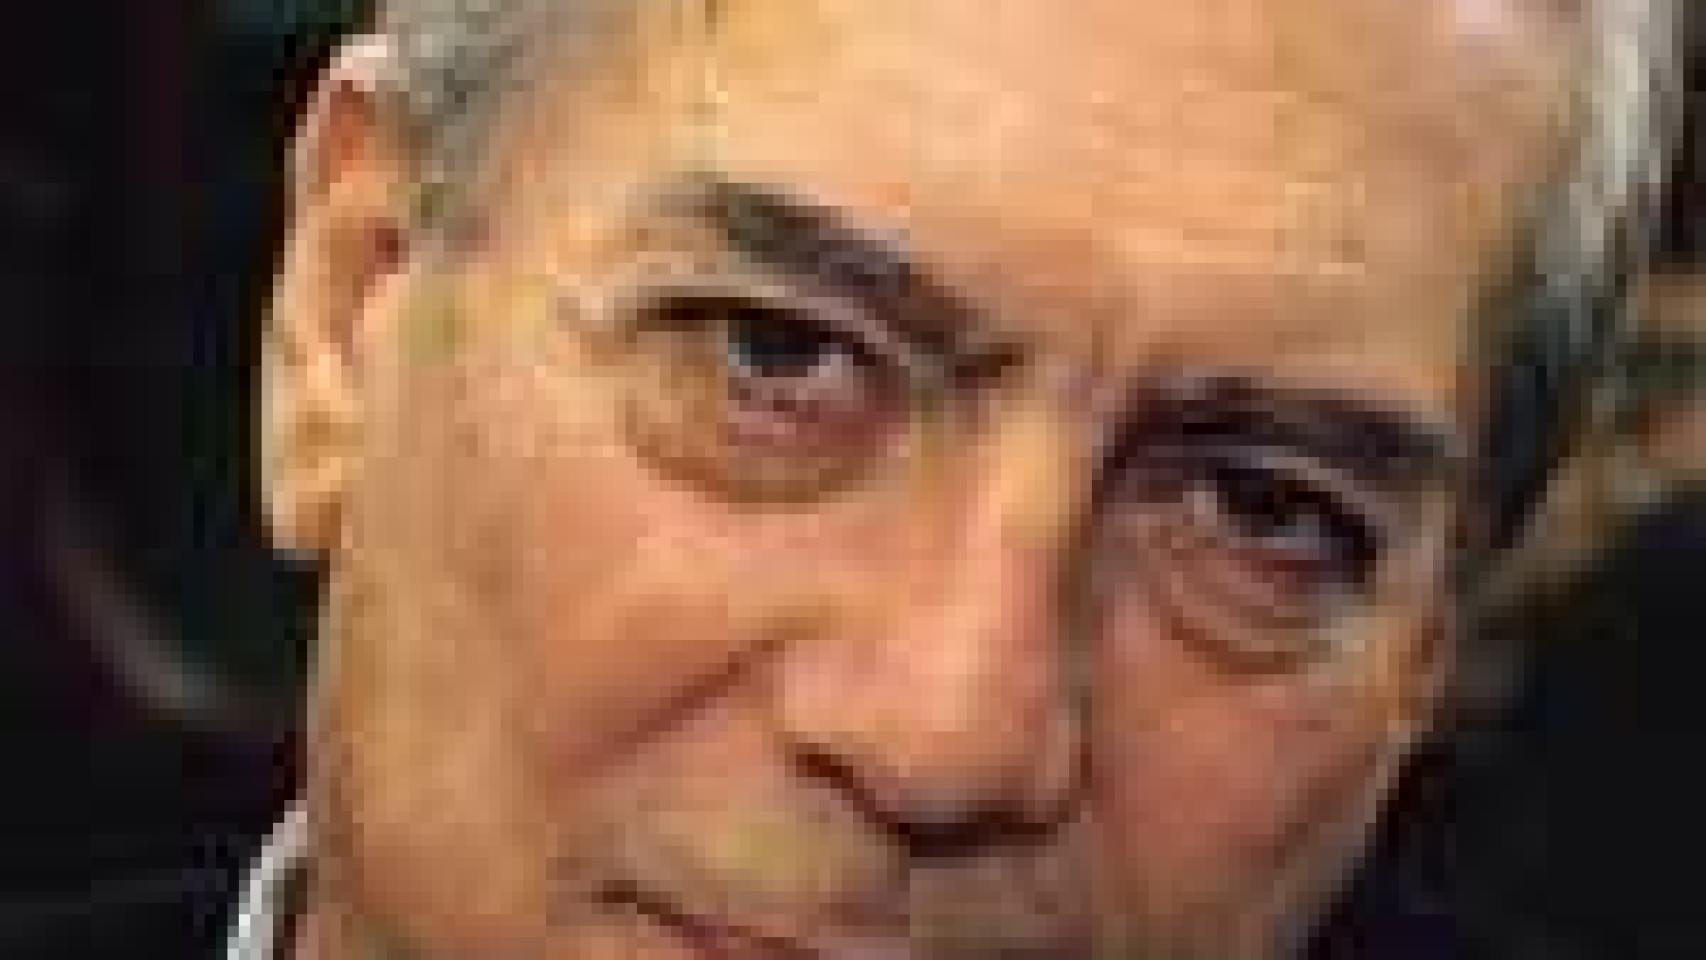 Image: Mario Vargas Llosa